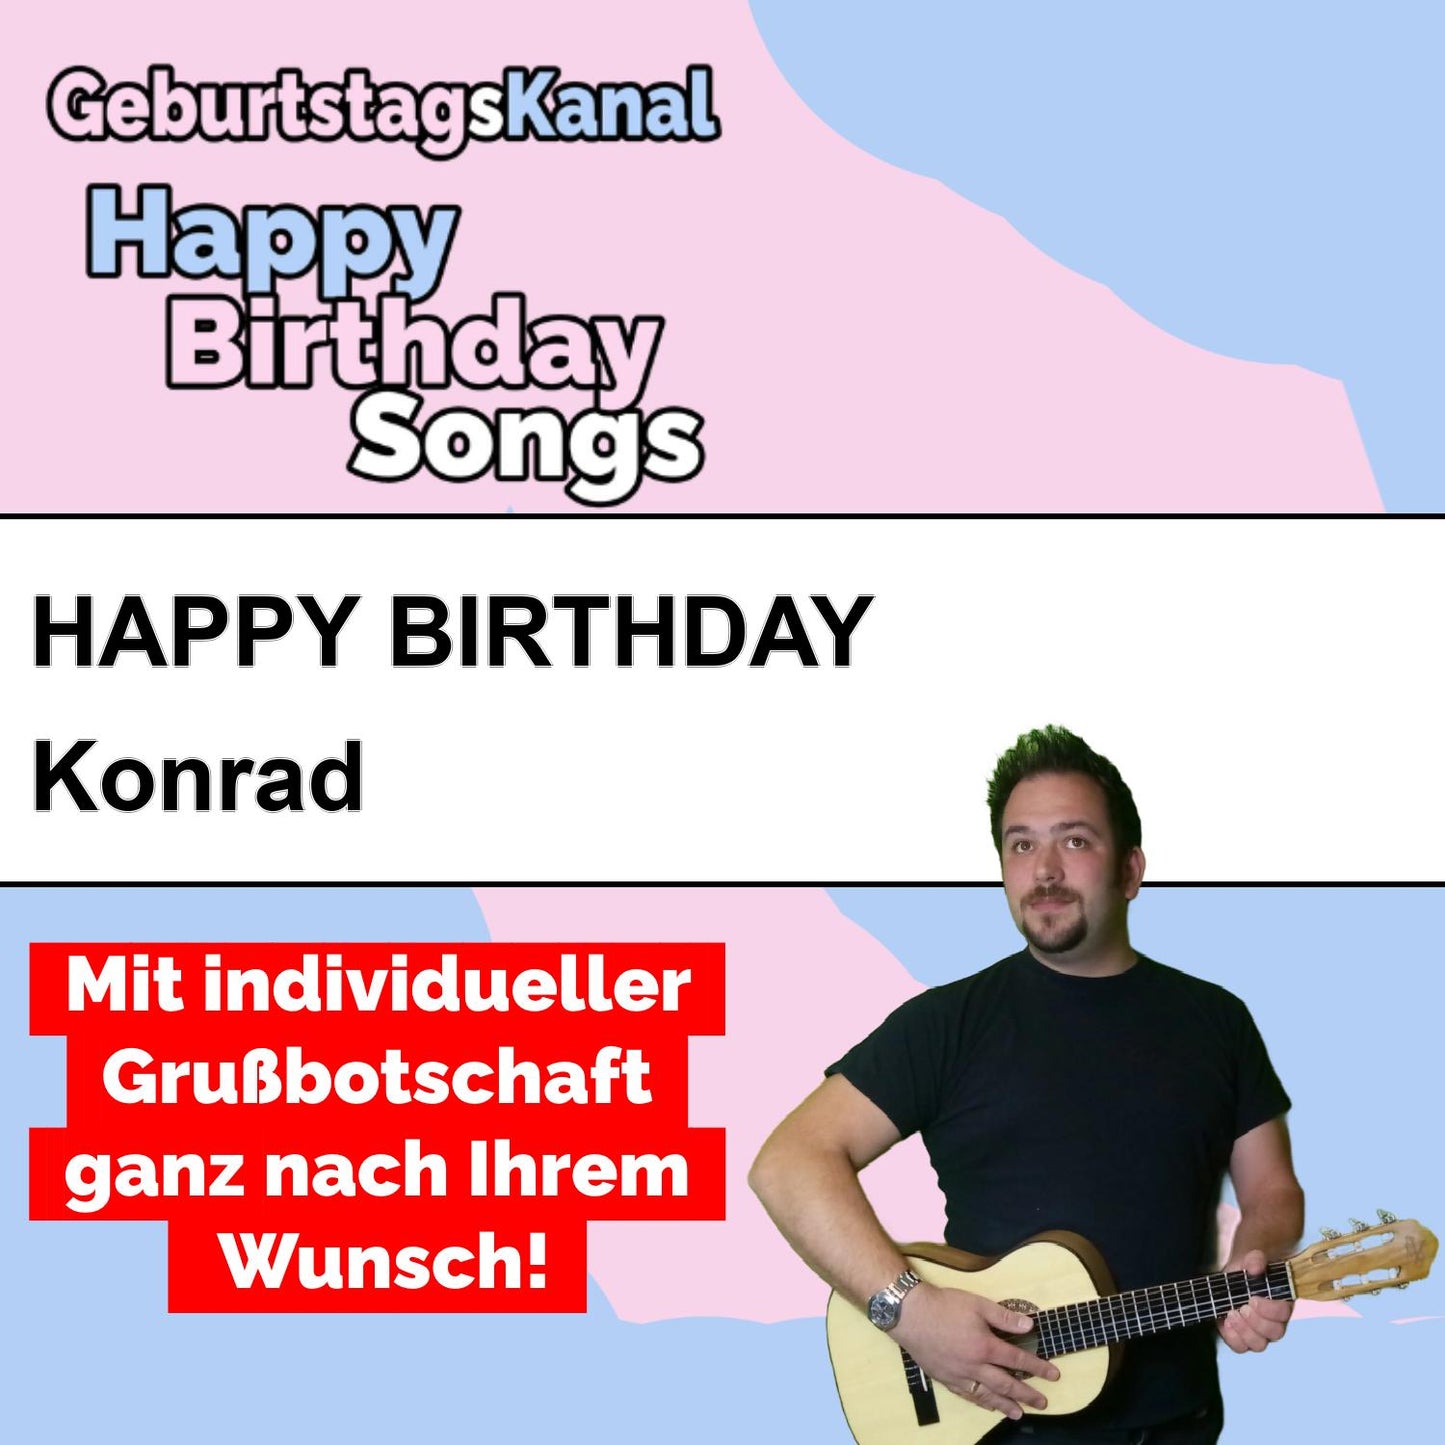 Produktbild Happy Birthday to you Konrad mit Wunschgrußbotschaft